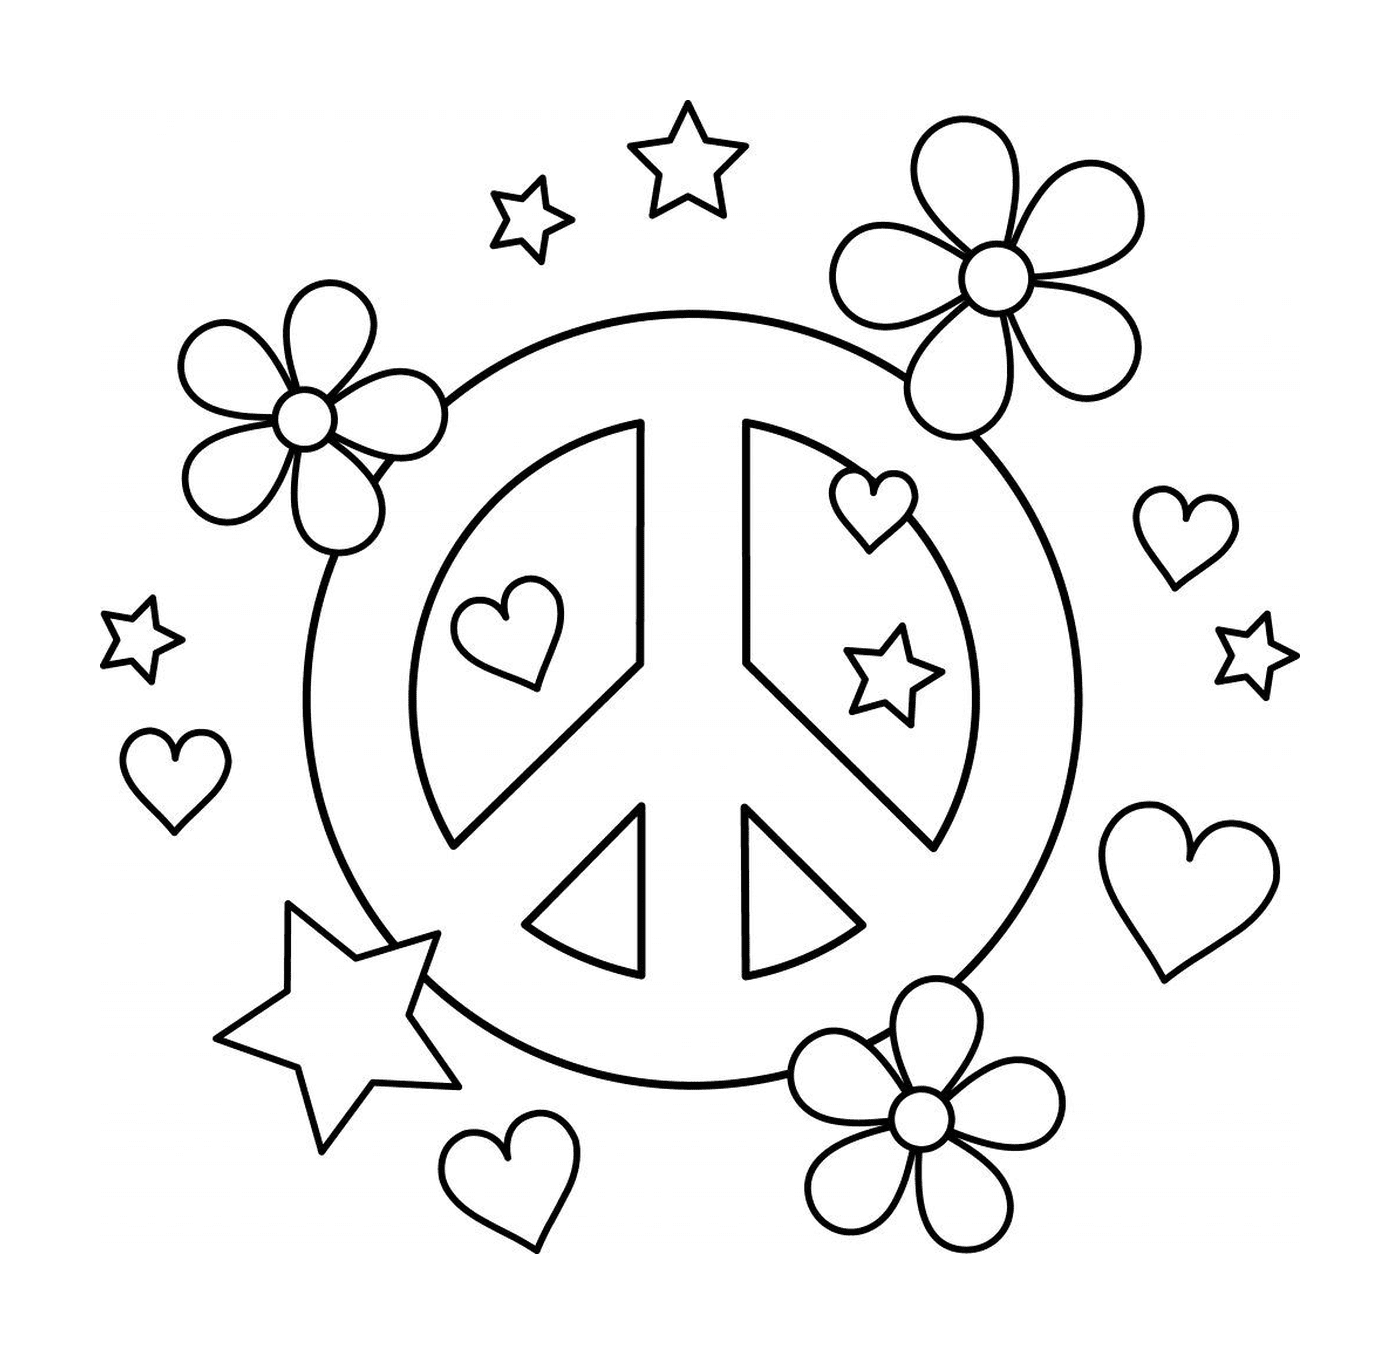  Friedenssymbol mit Herzen und Blumen 